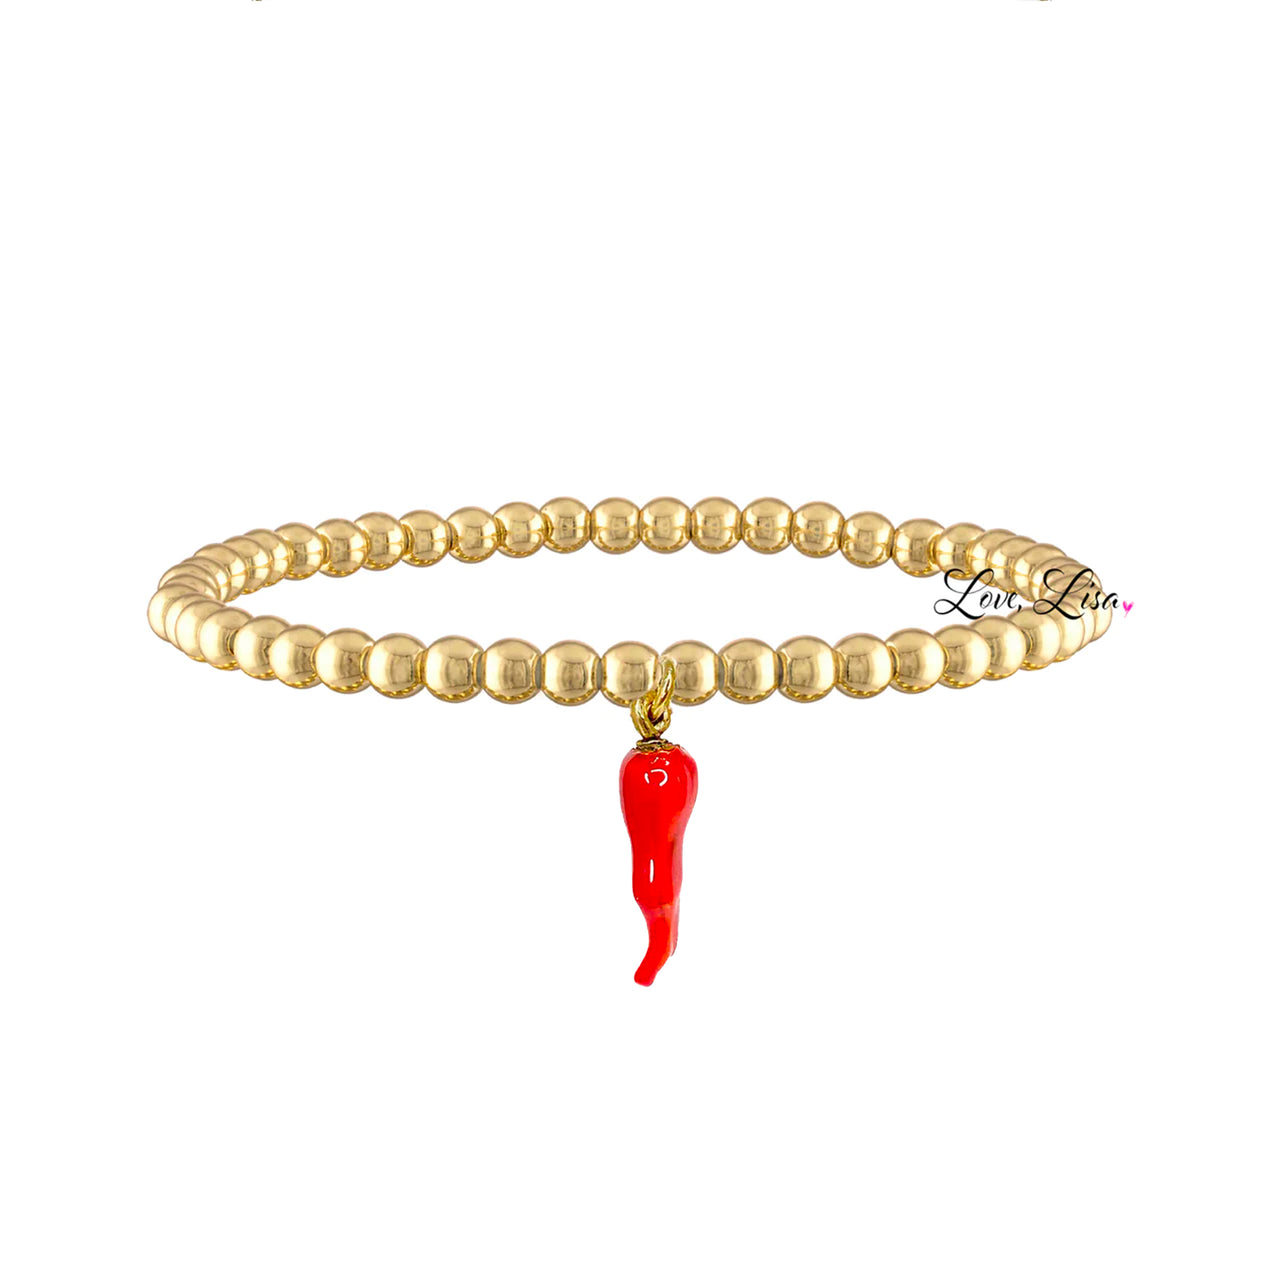 Gia Italian Horn Bracelet